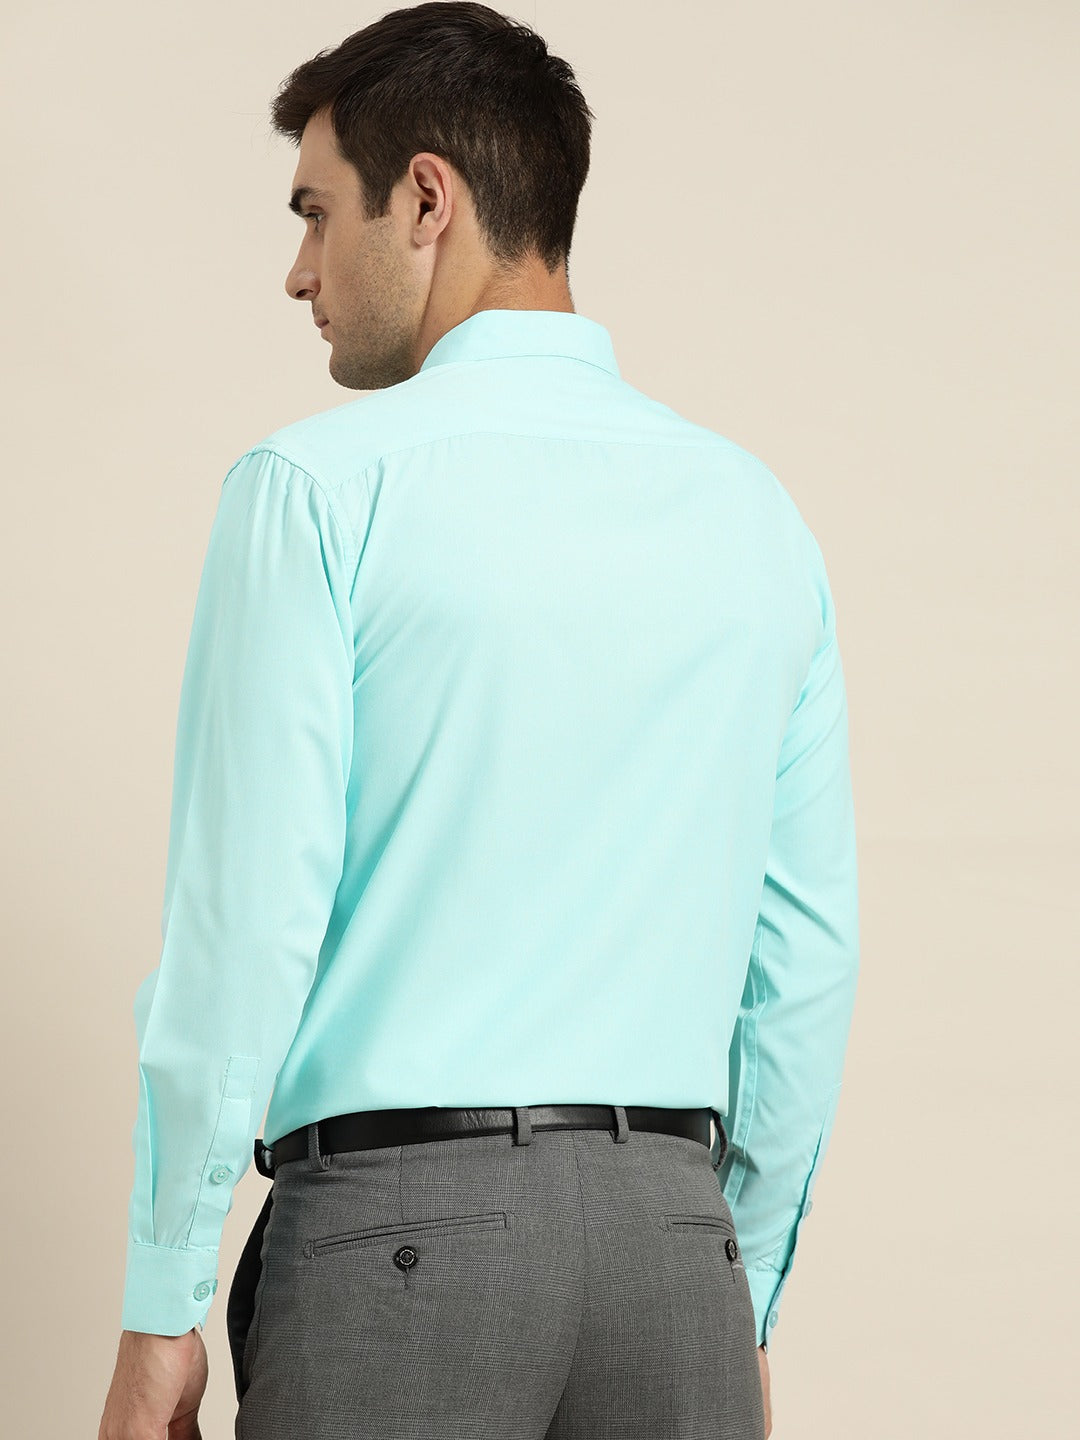 Men's Cotton Turquoise Blue Casual Shirt